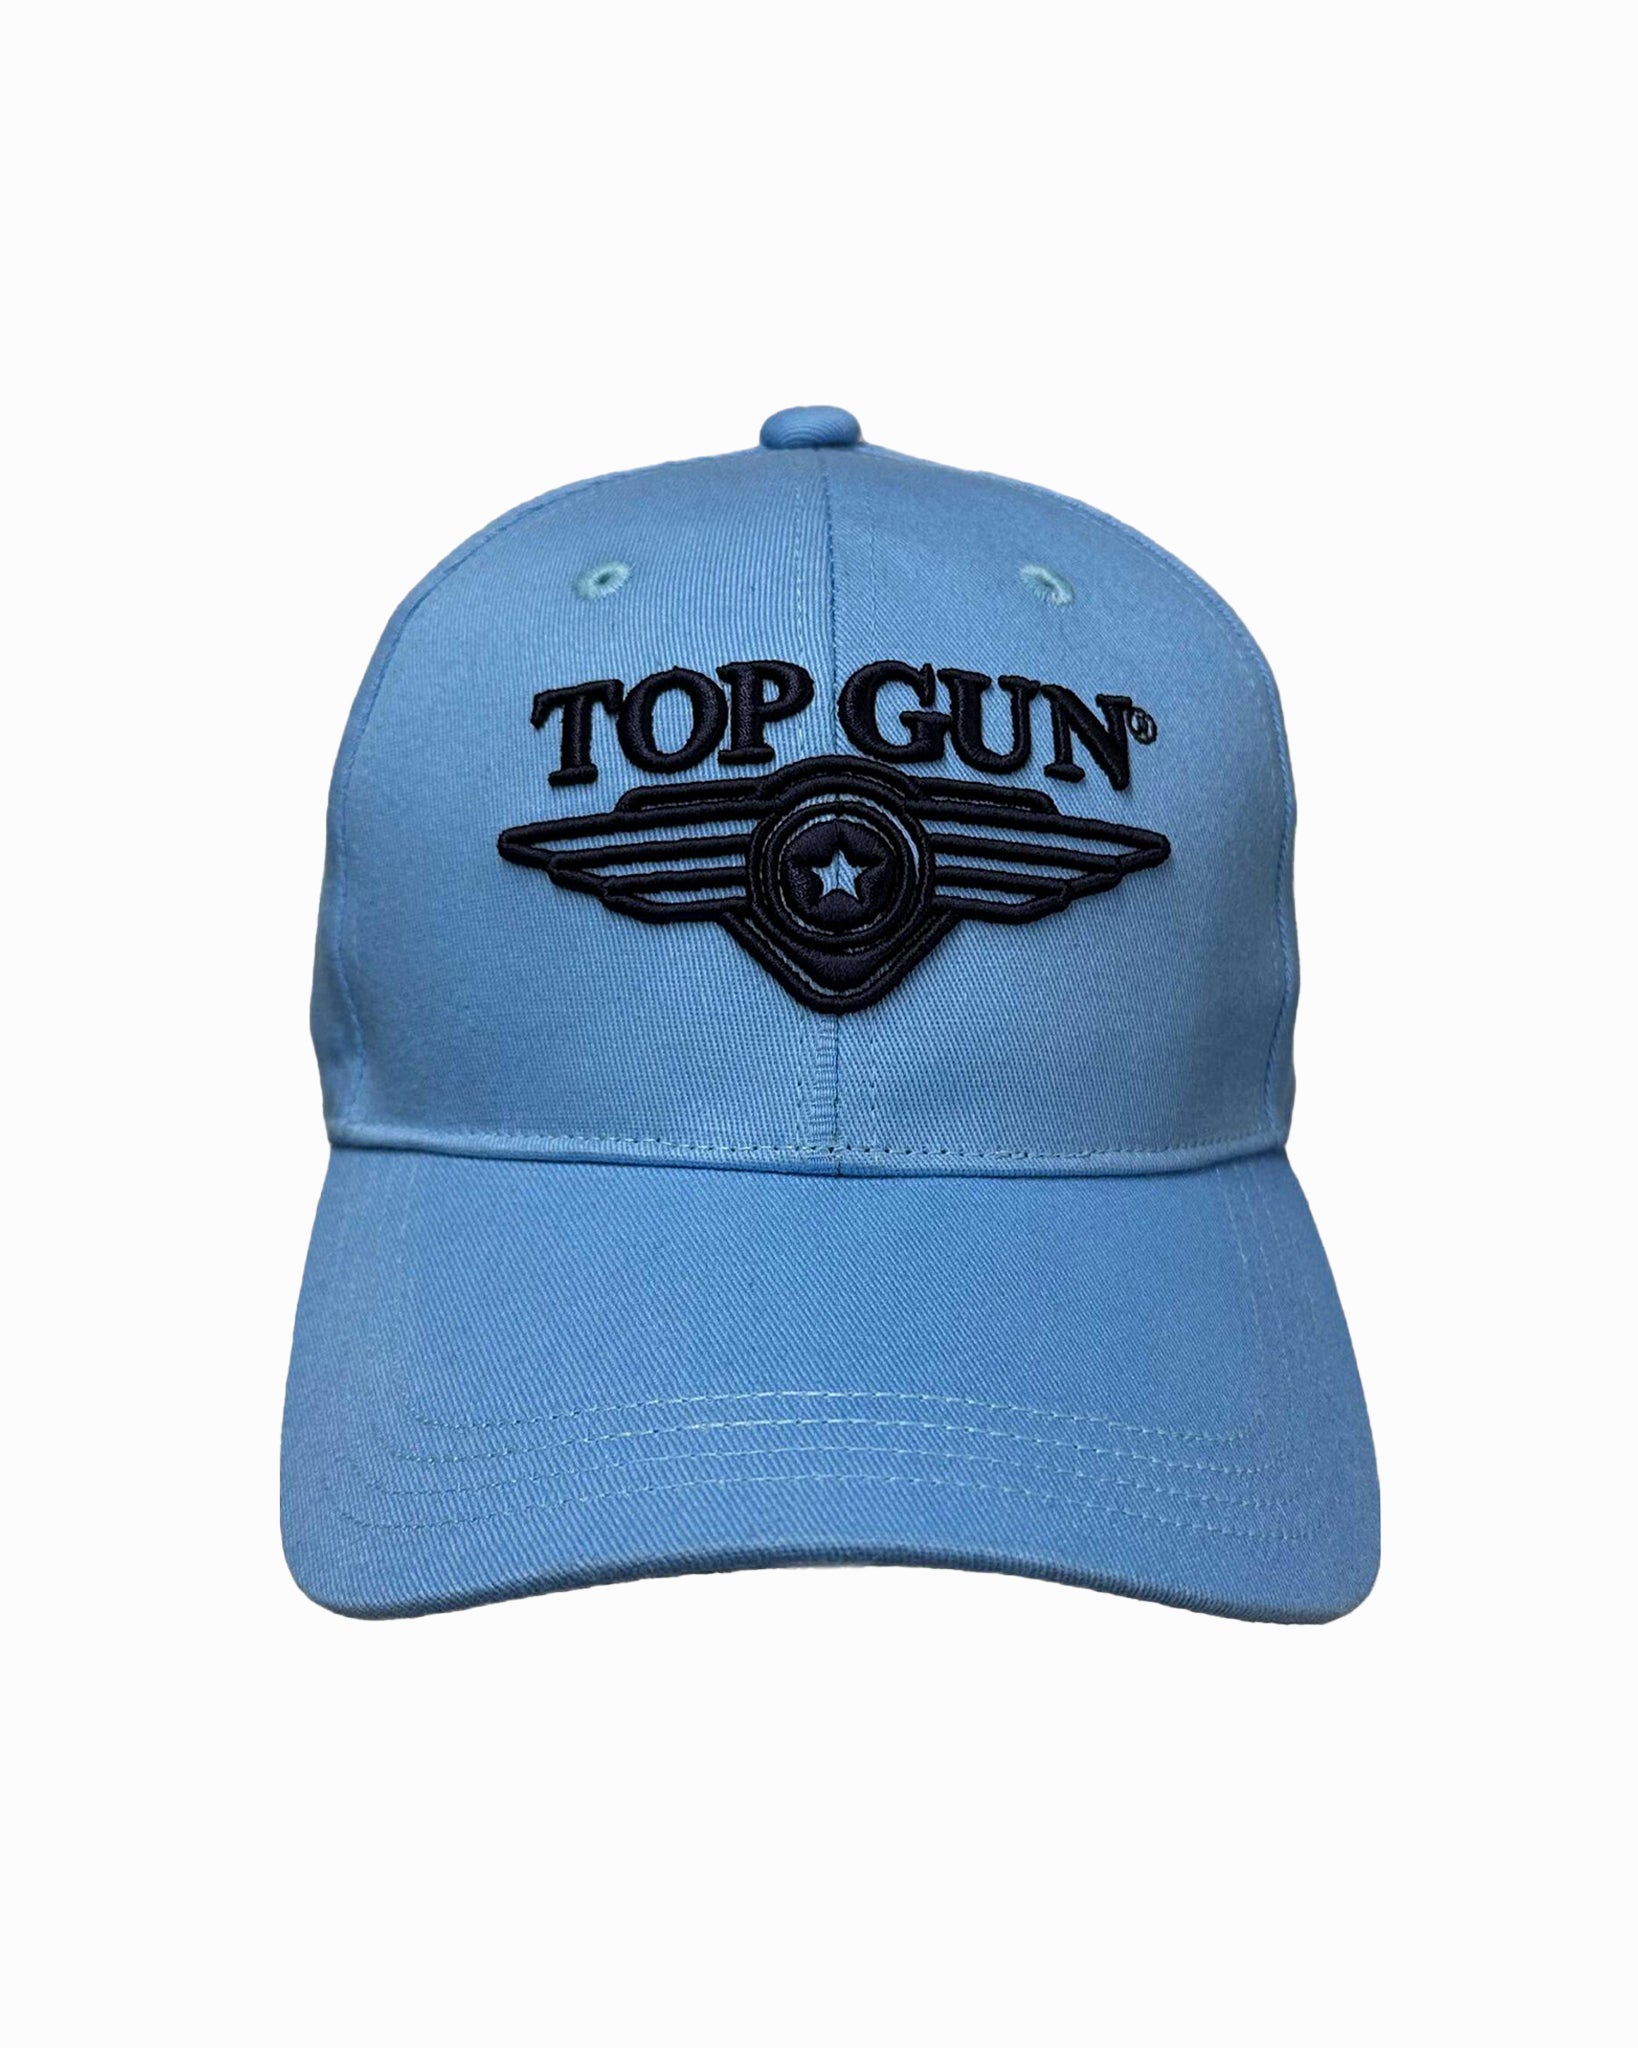 TOP GUN® KIDS' 3D LOGO CAP